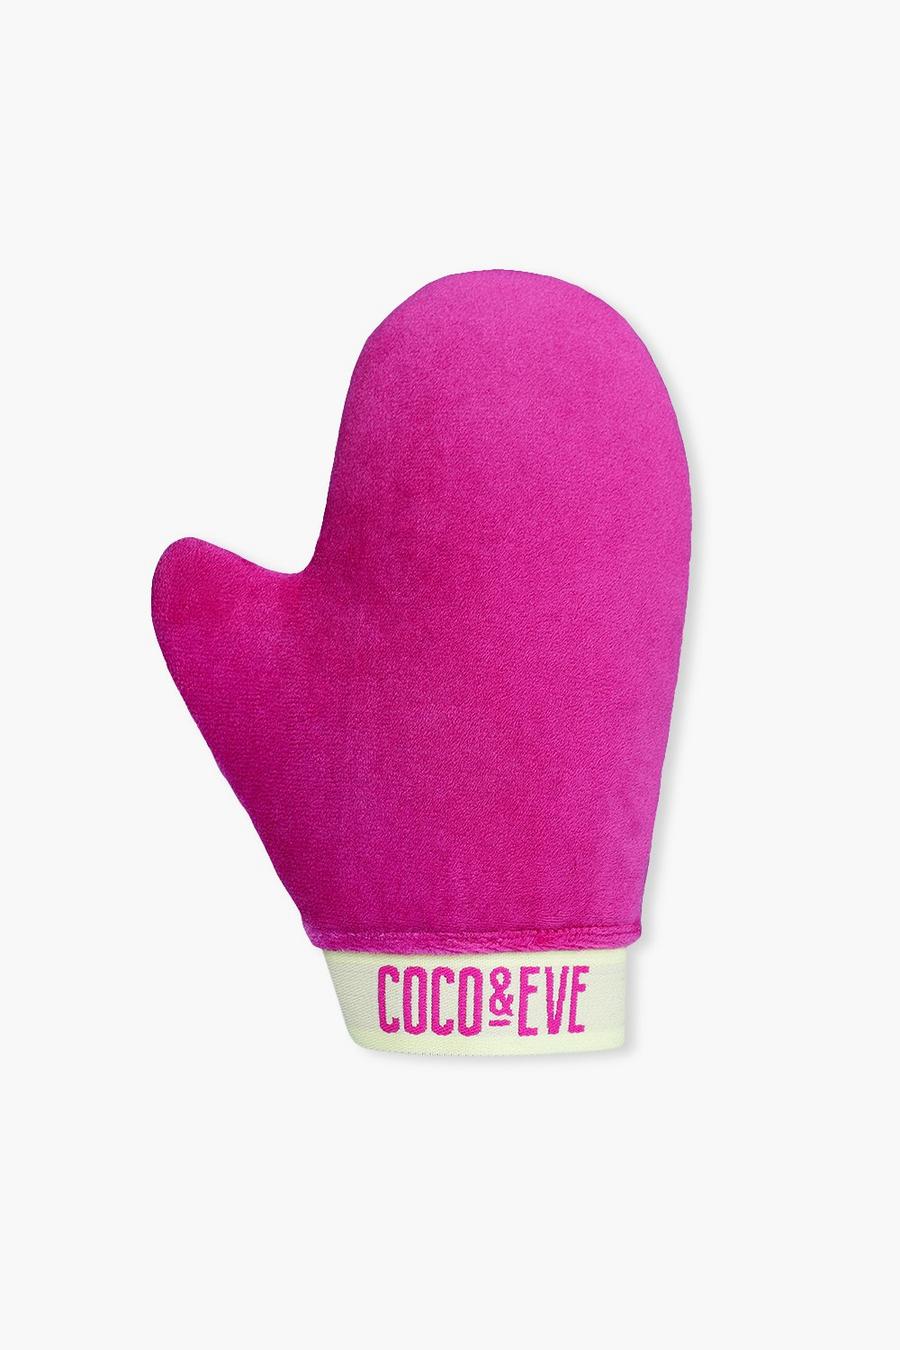 Coco & Eve - Guanto abbronzante Sunny Honey effetto velluto, Pink